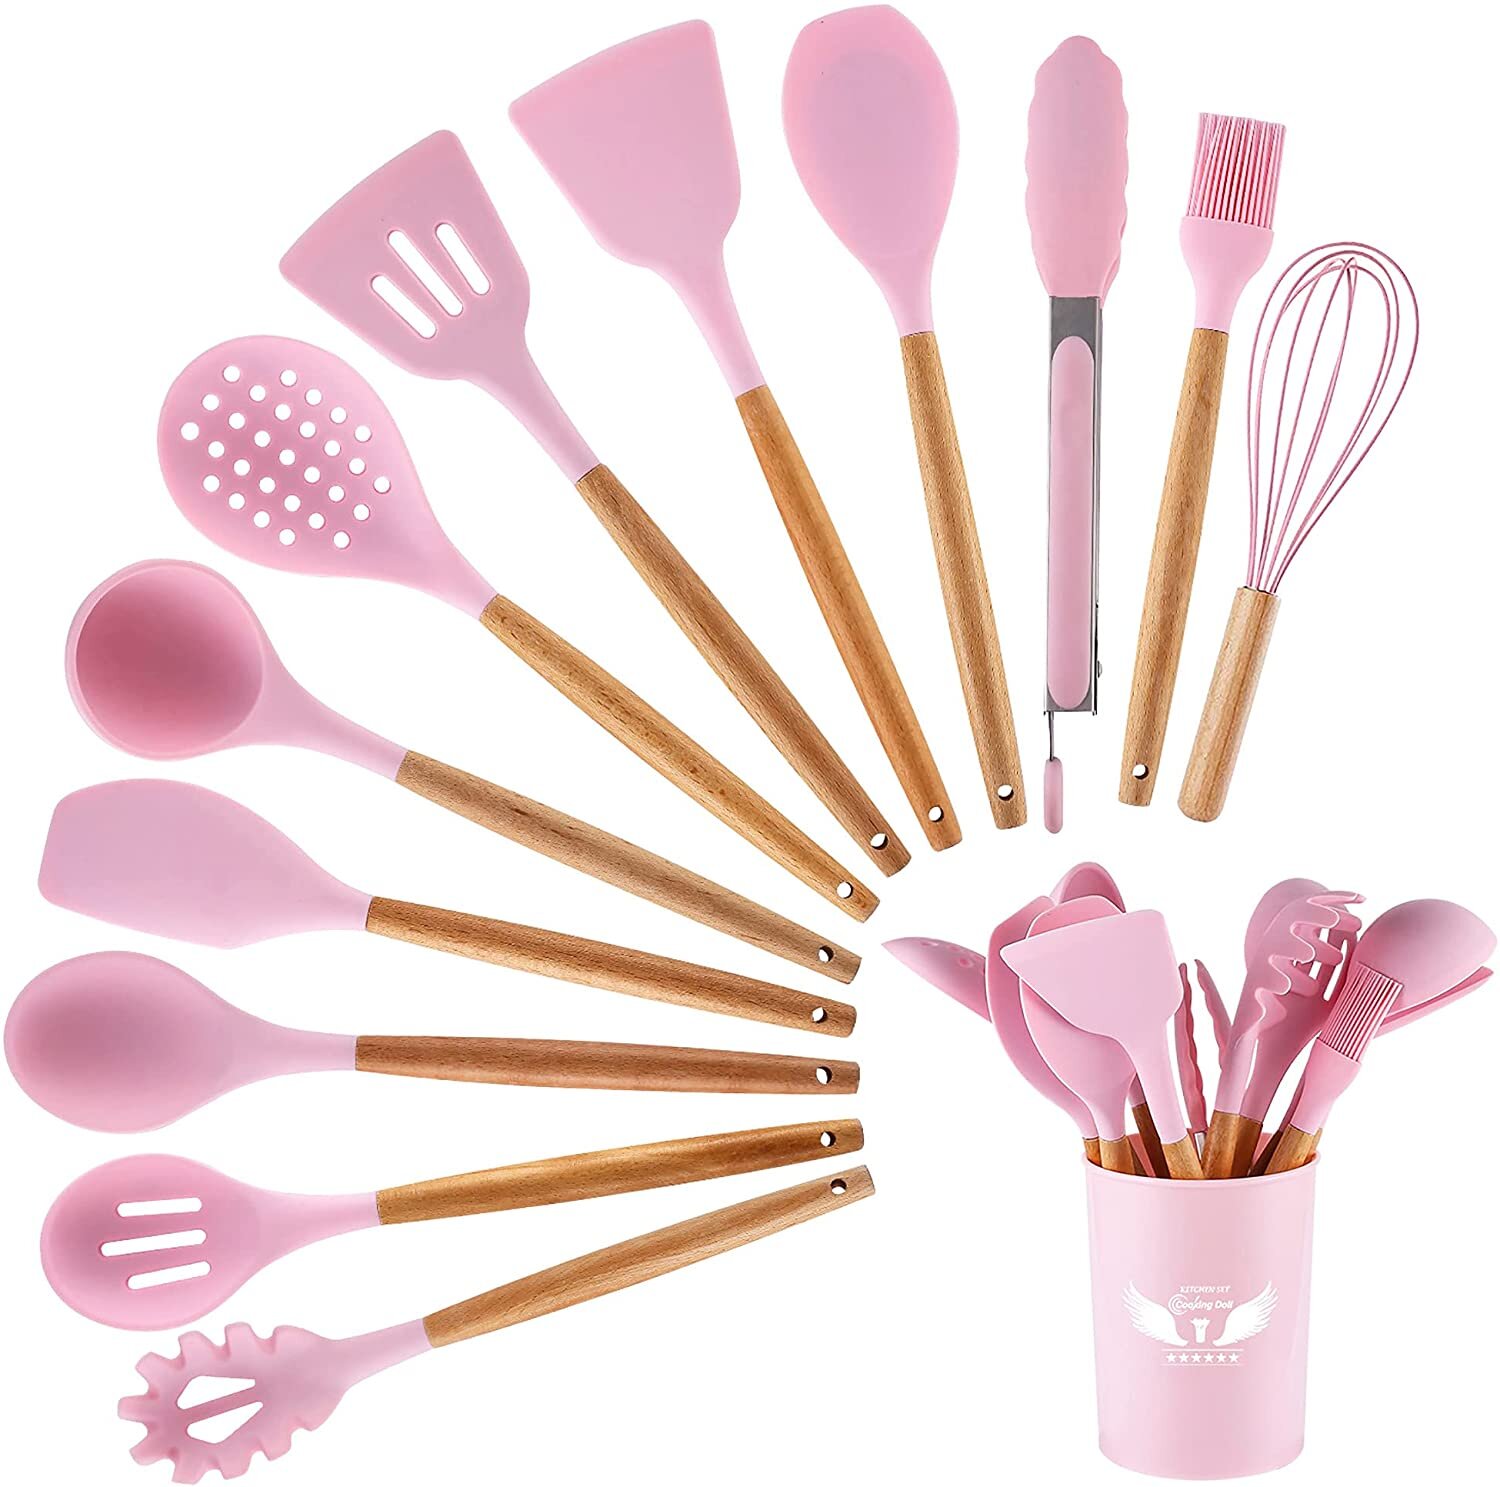 https://assets.wfcdn.com/im/42859312/compr-r85/1698/169873264/13-piece-silicone-assorted-kitchen-utensil-set.jpg